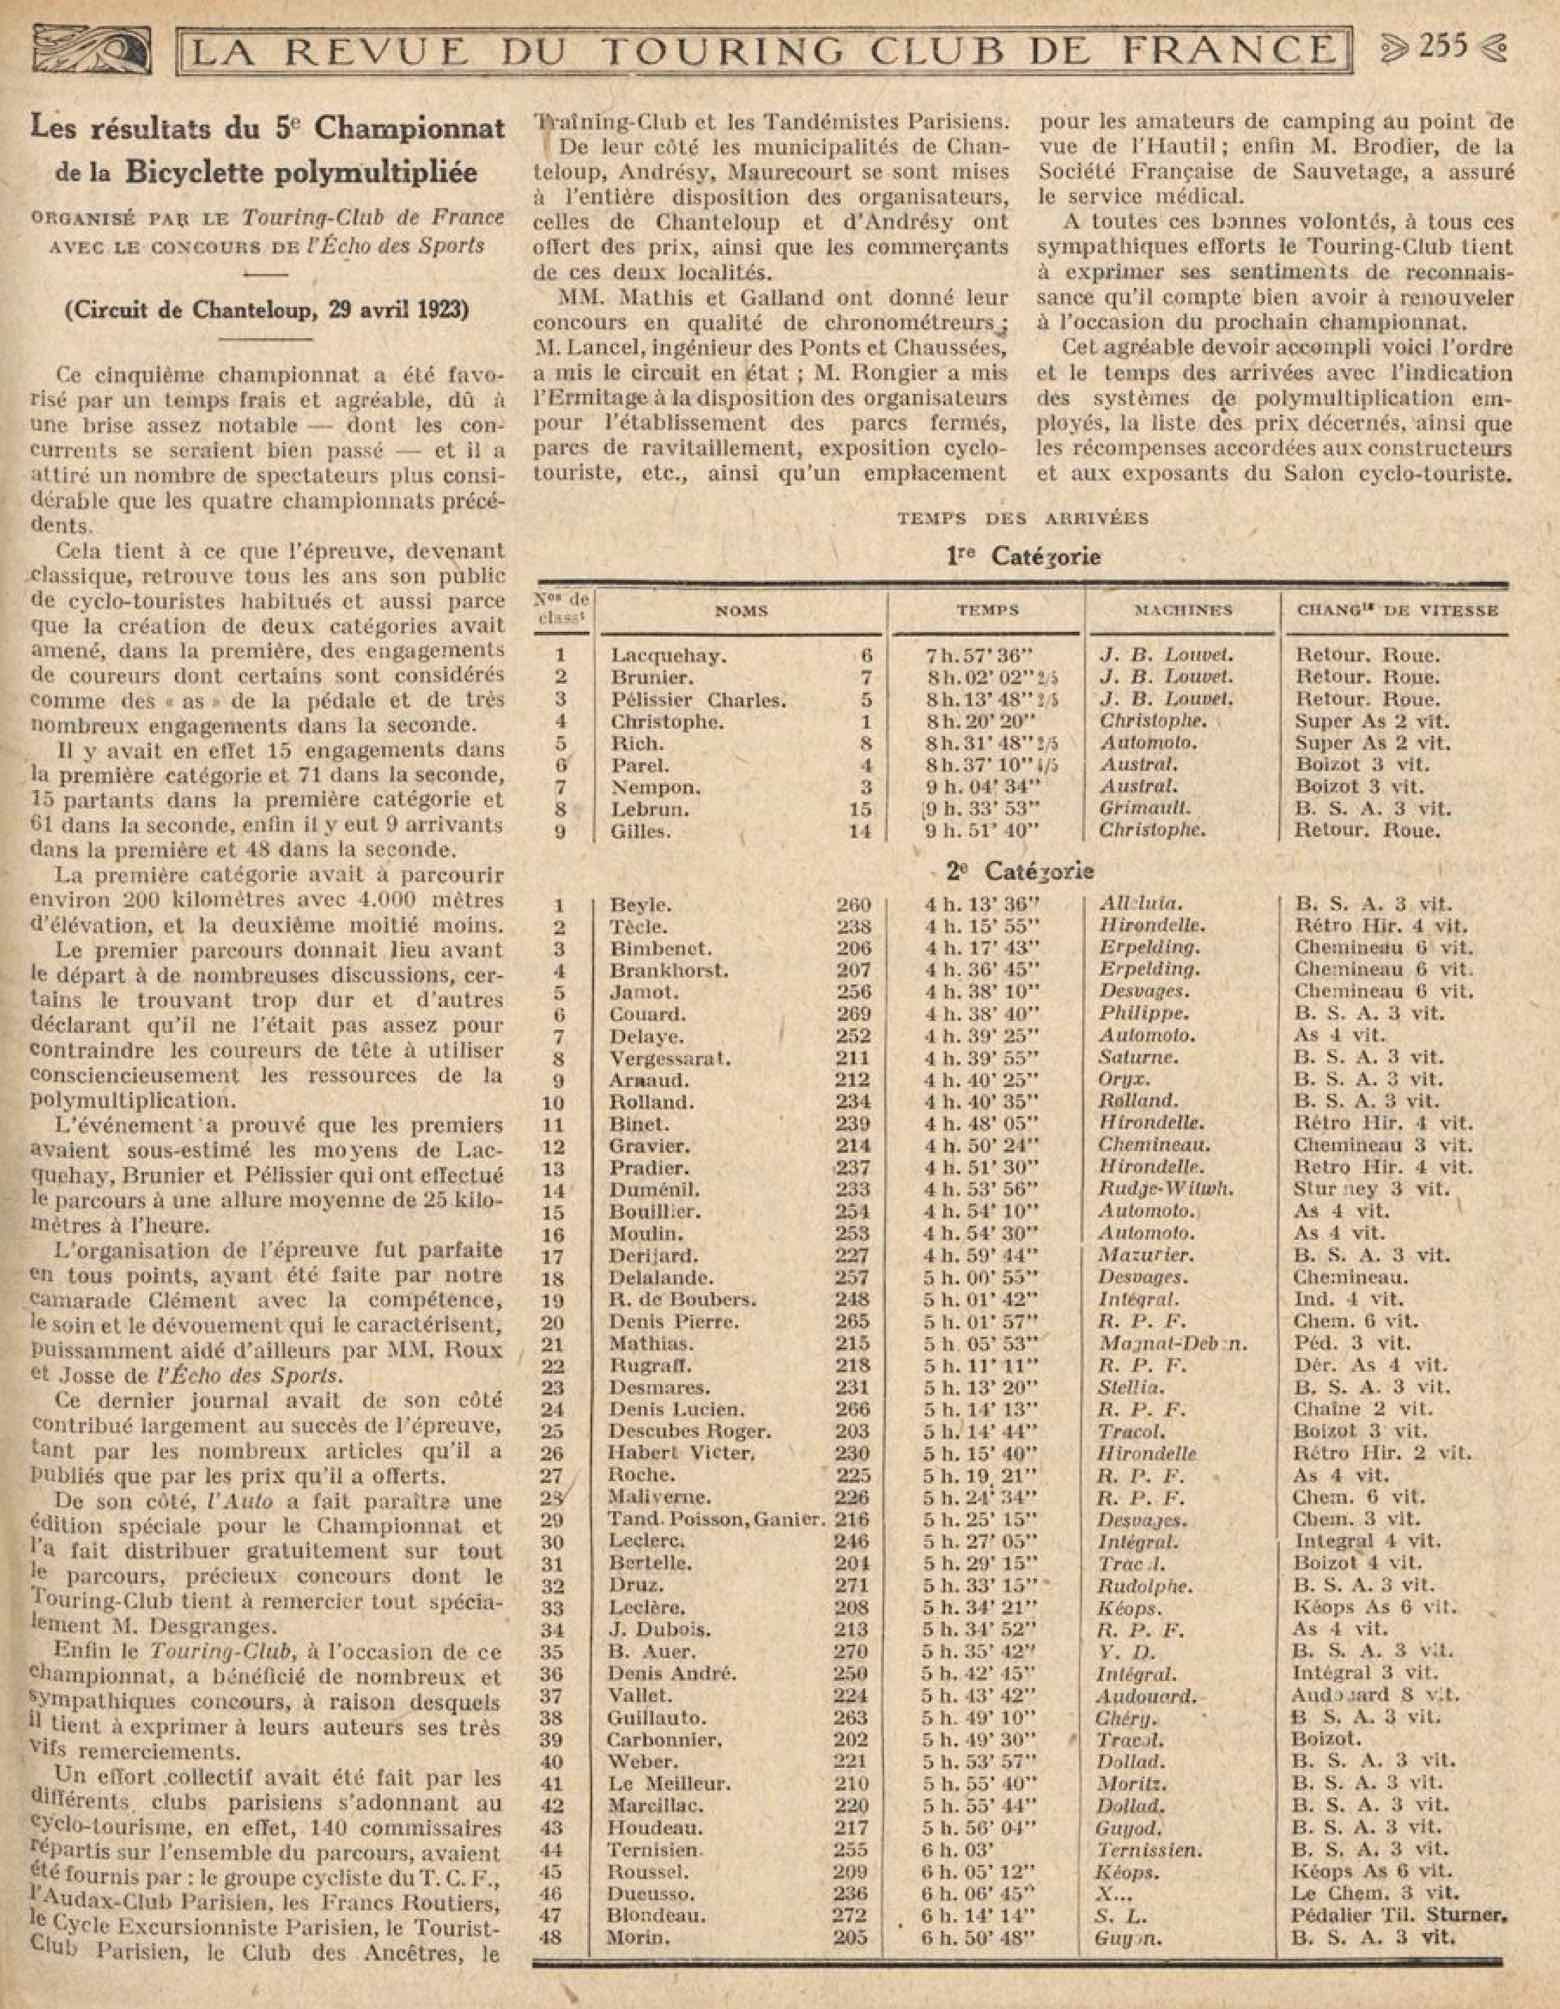 T.C.F. Revue Mensuelle June 1923 - Les resultats du 5e Championnat de la Bicyclette polymultipliee scan 1 main image